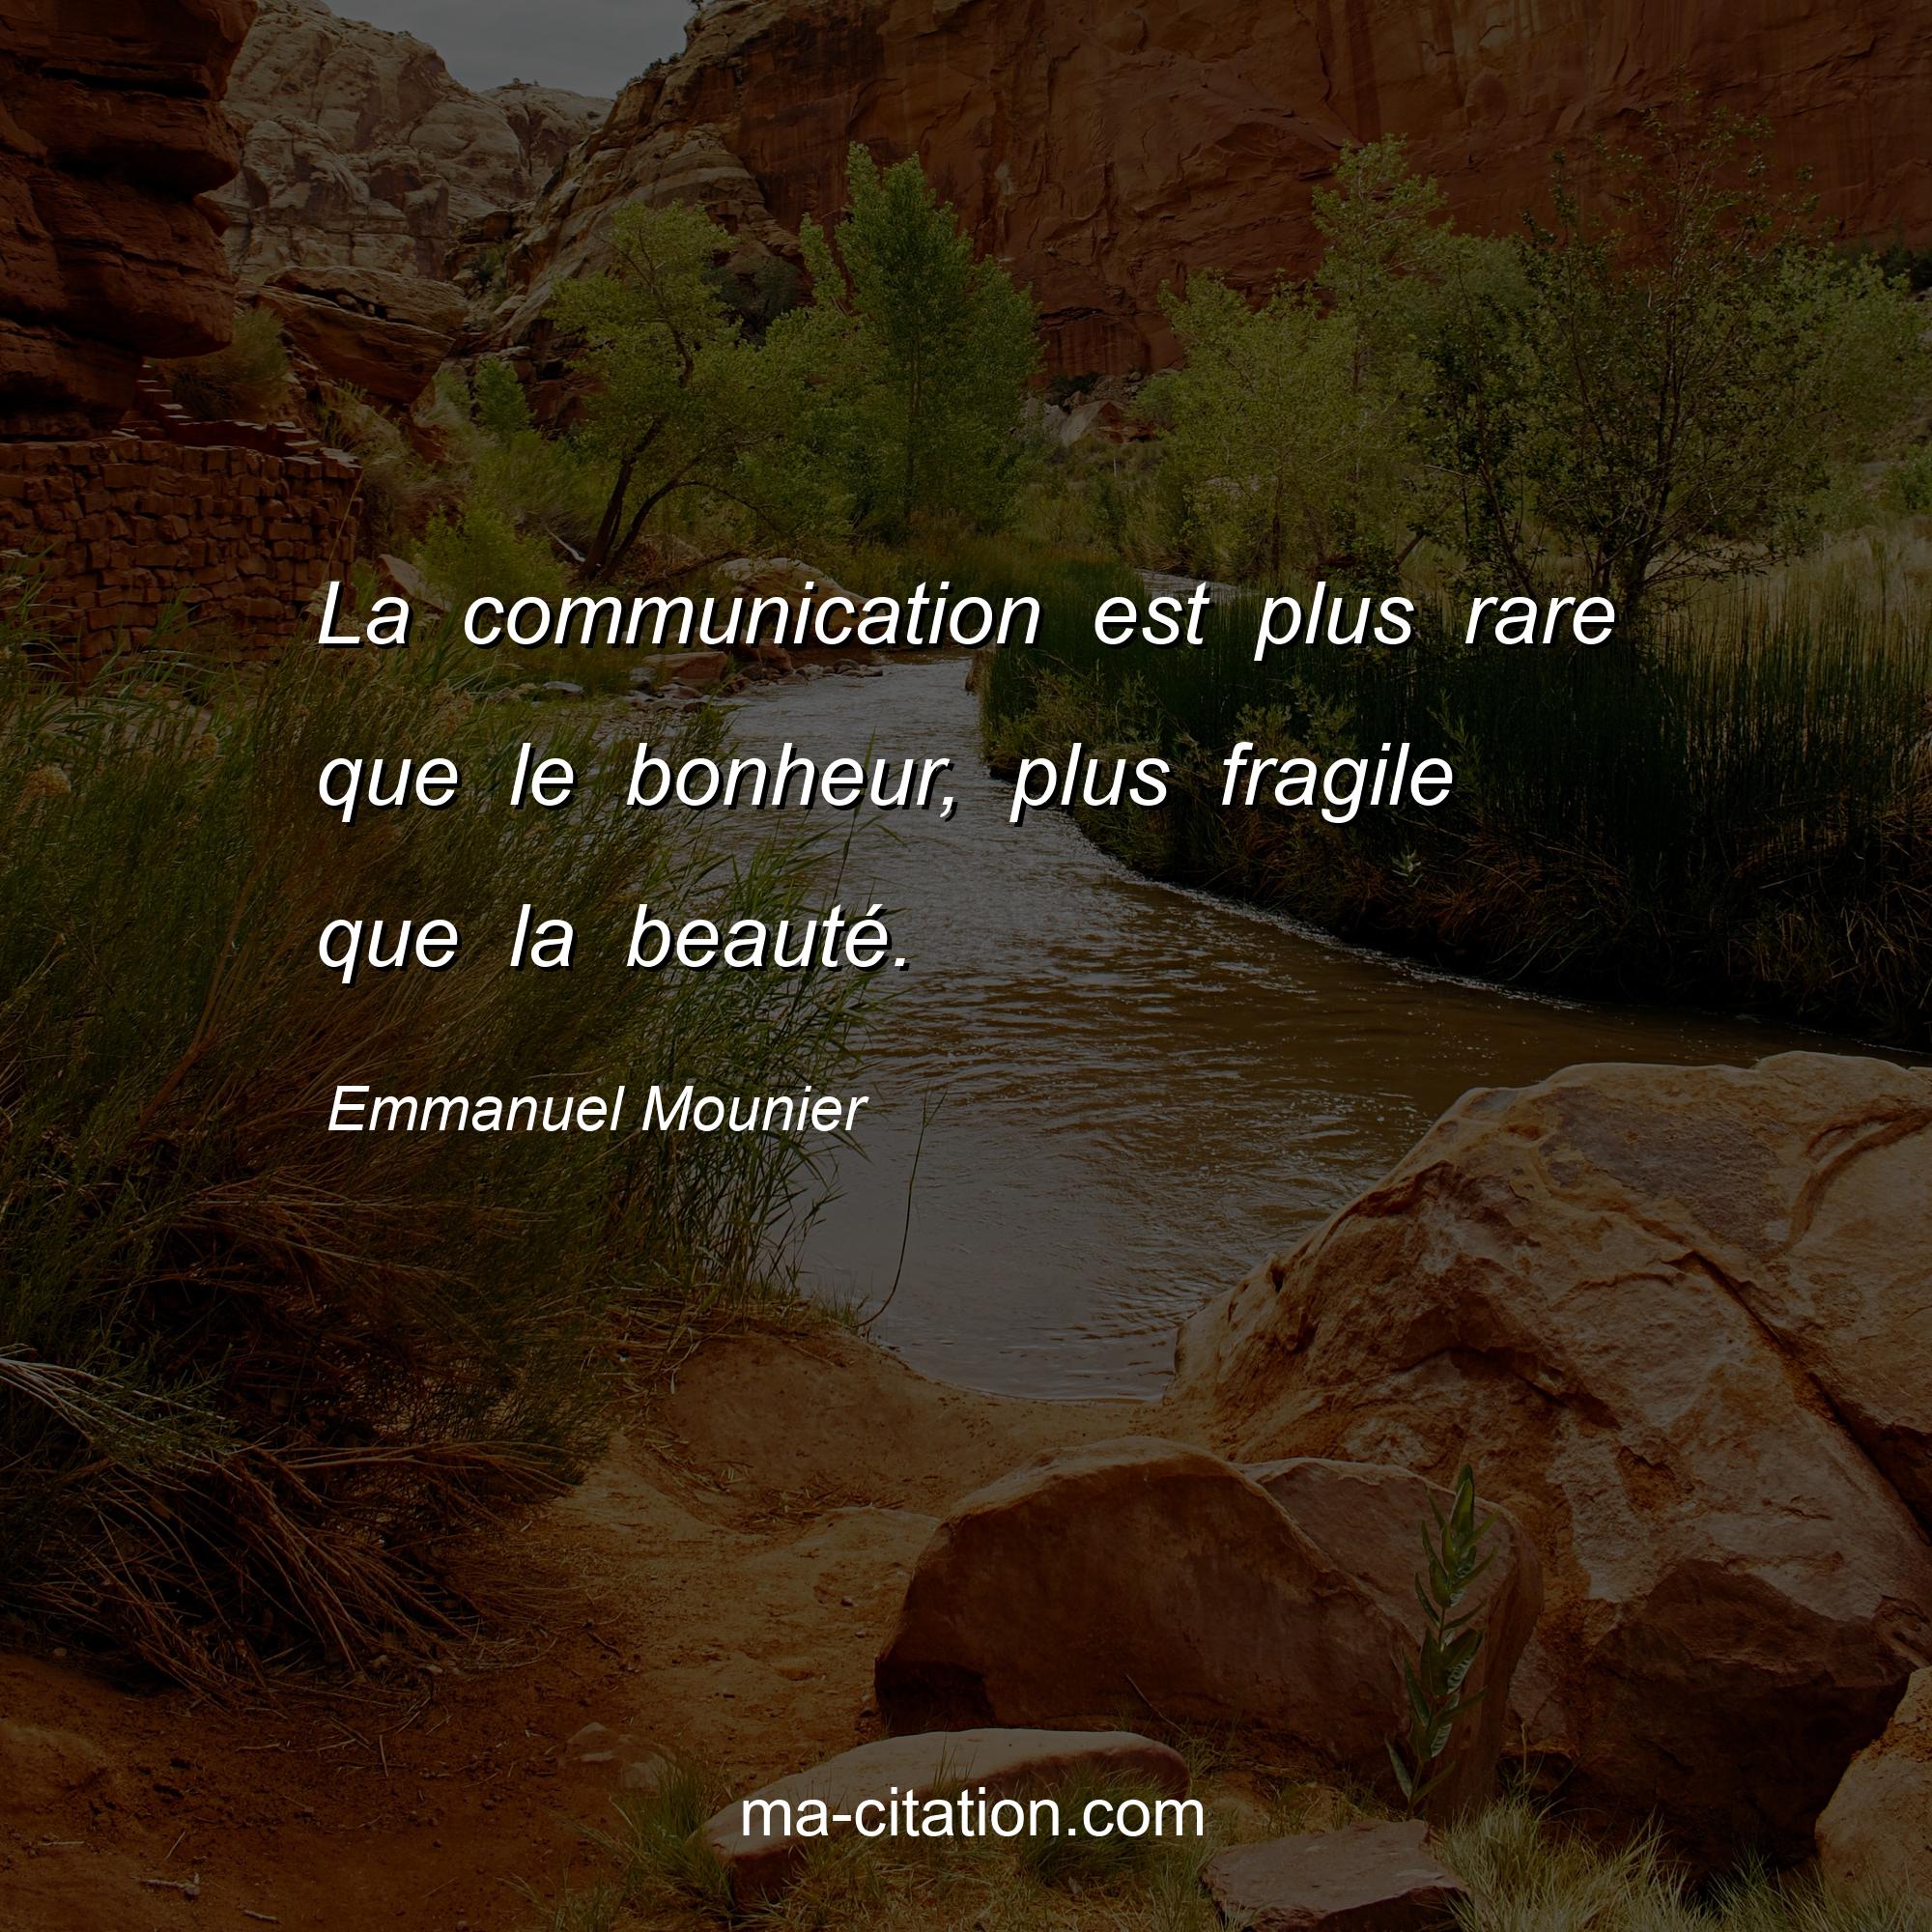 Emmanuel Mounier : La communication est plus rare que le bonheur, plus fragile que la beauté.